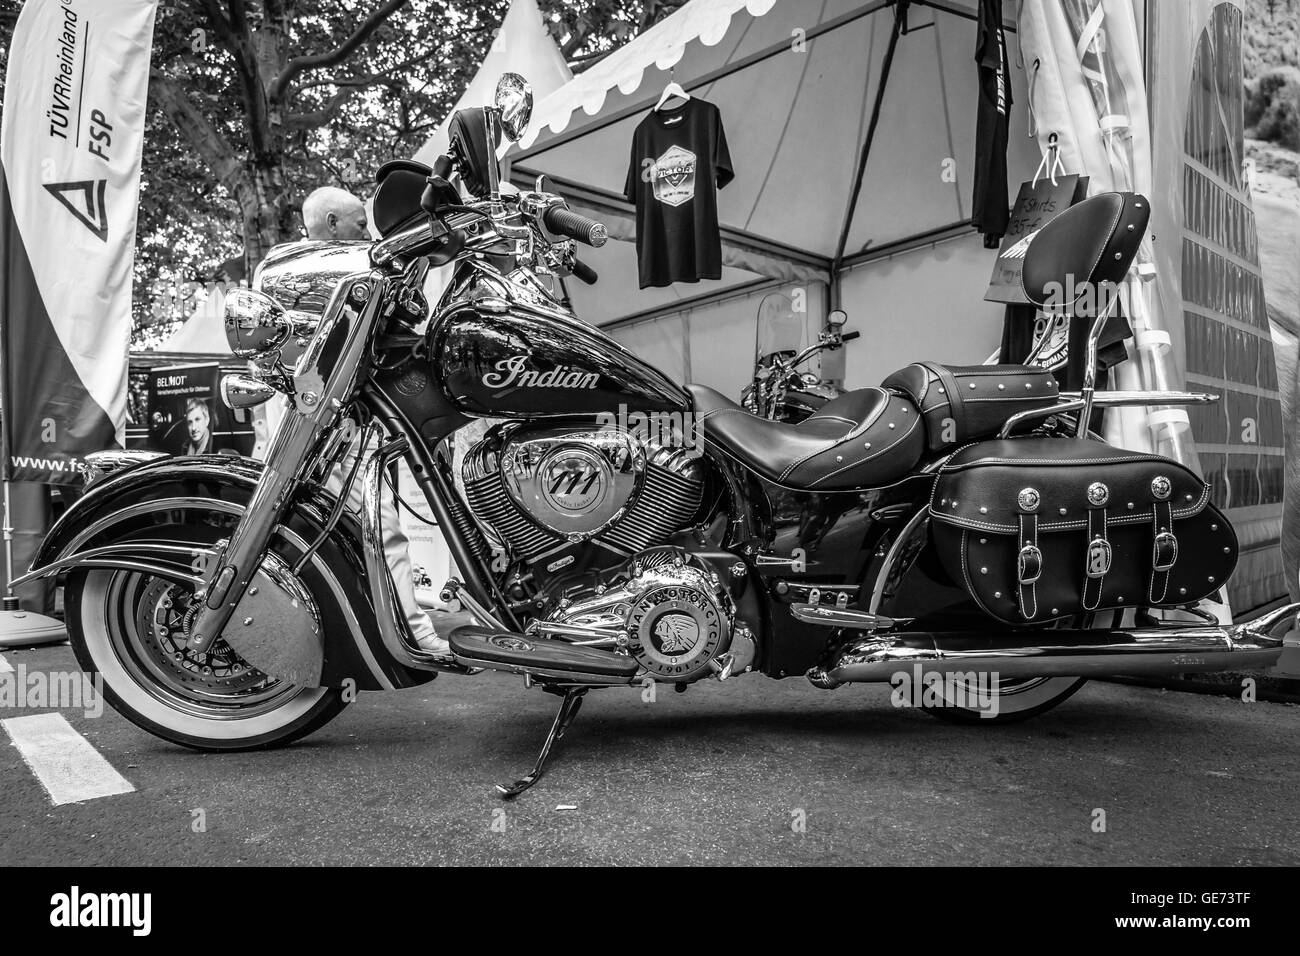 BERLIN - 5. Juni 2016: Motorrad Indianer Häuptling. Schwarz und weiß. Classic Days Berlin 2016. Stockfoto